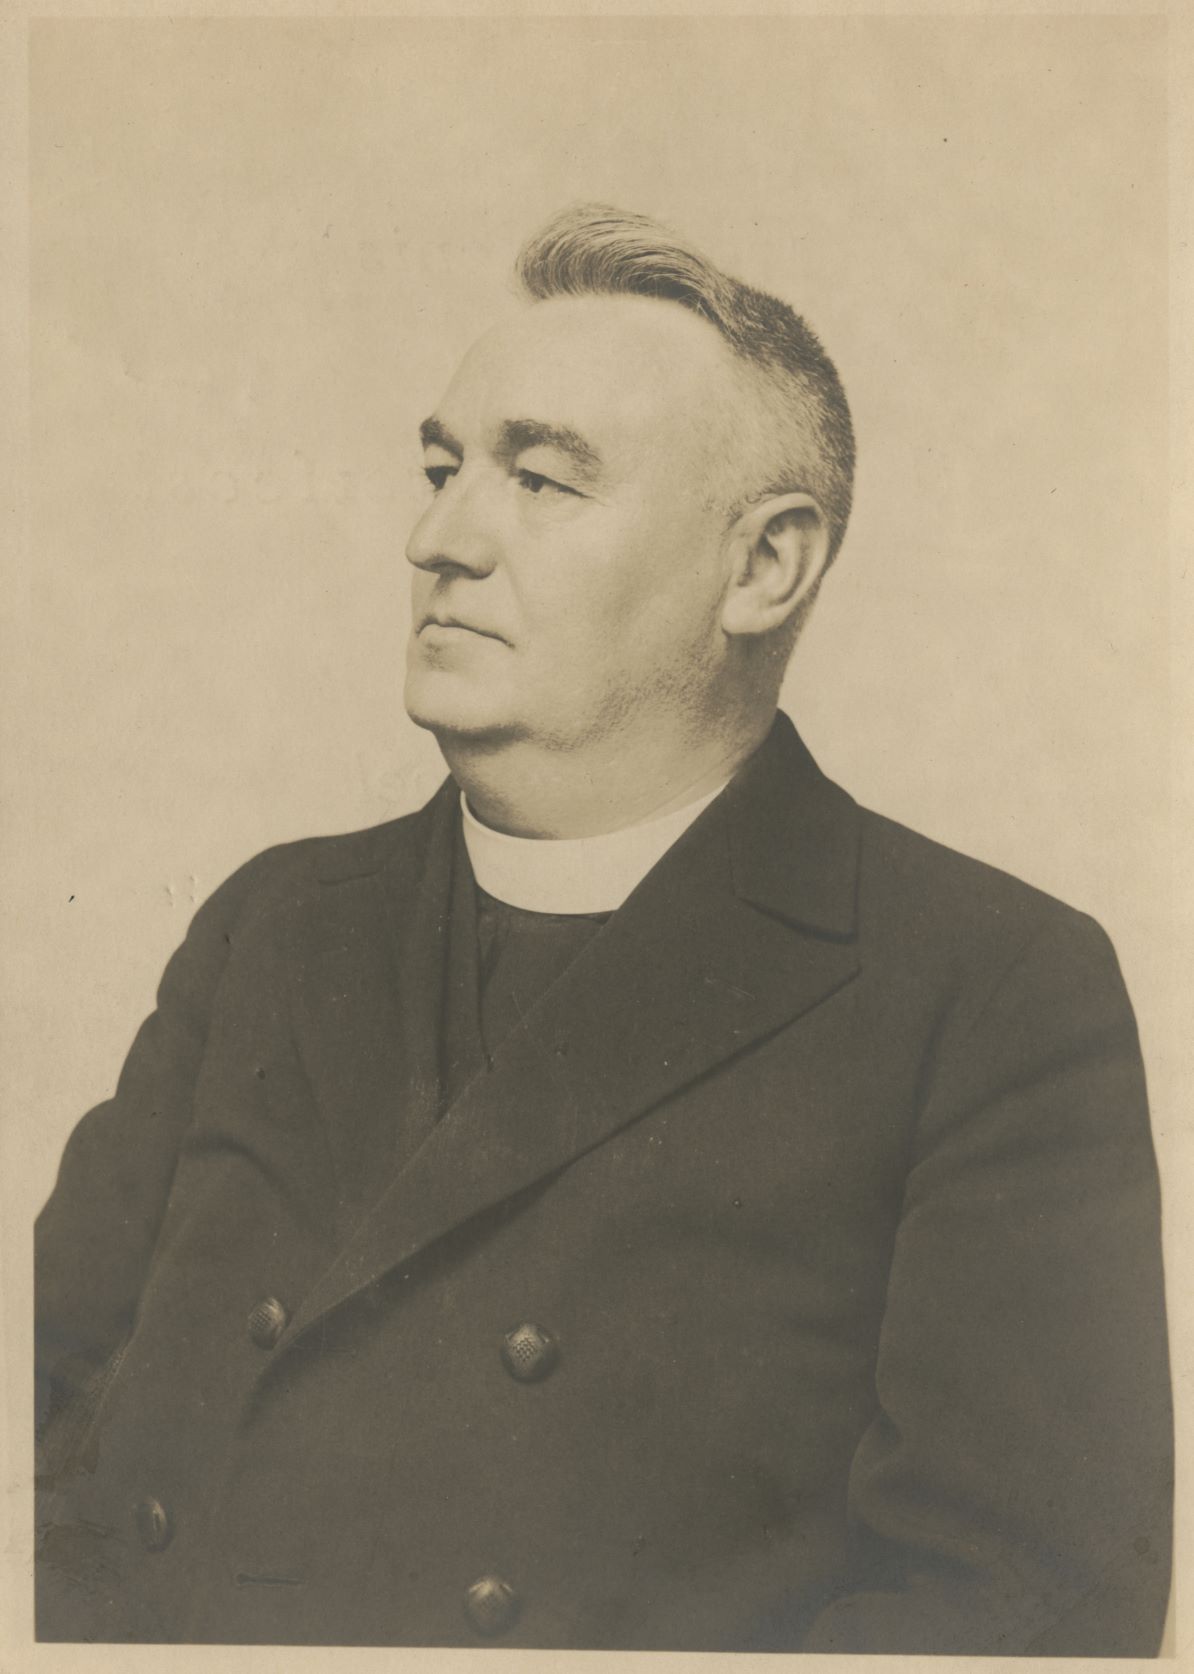 J.H. Duymel, pastoor van de H. Sacramentskerk. Portret vervaardigd 'ter gedachtenis aan mijn zilveren priesterfeest, 1905 - 15 augustus - 1930'